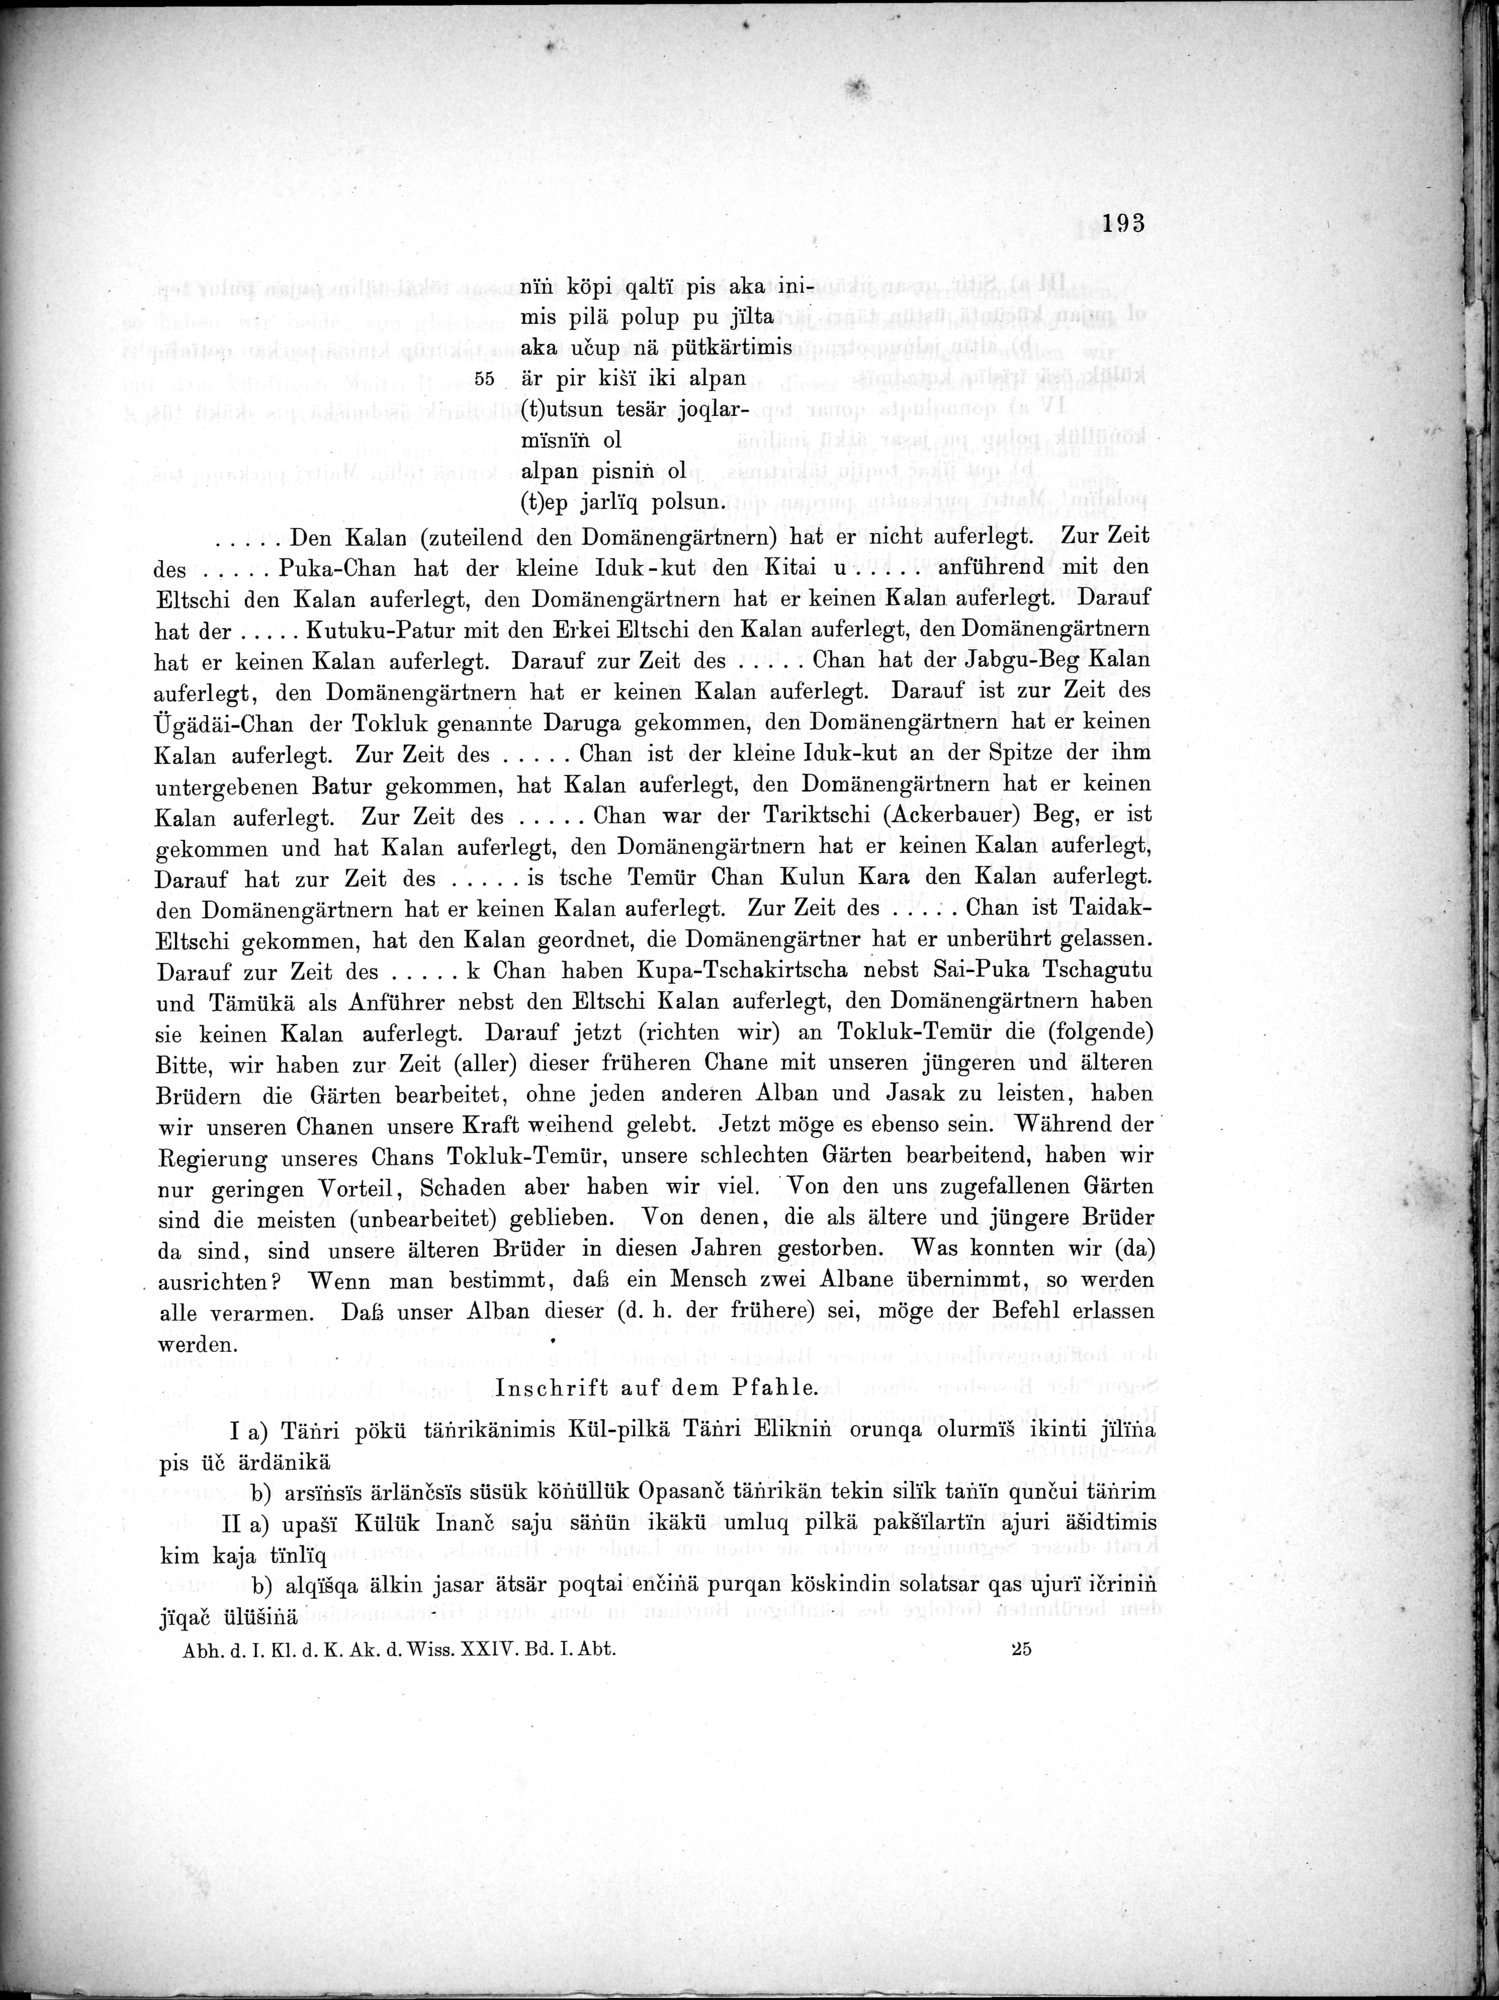 Bericht über archäologische Arbeiten in Idikutschari und Umgebung im Winter 1902-1903 : vol.1 / Page 203 (Grayscale High Resolution Image)